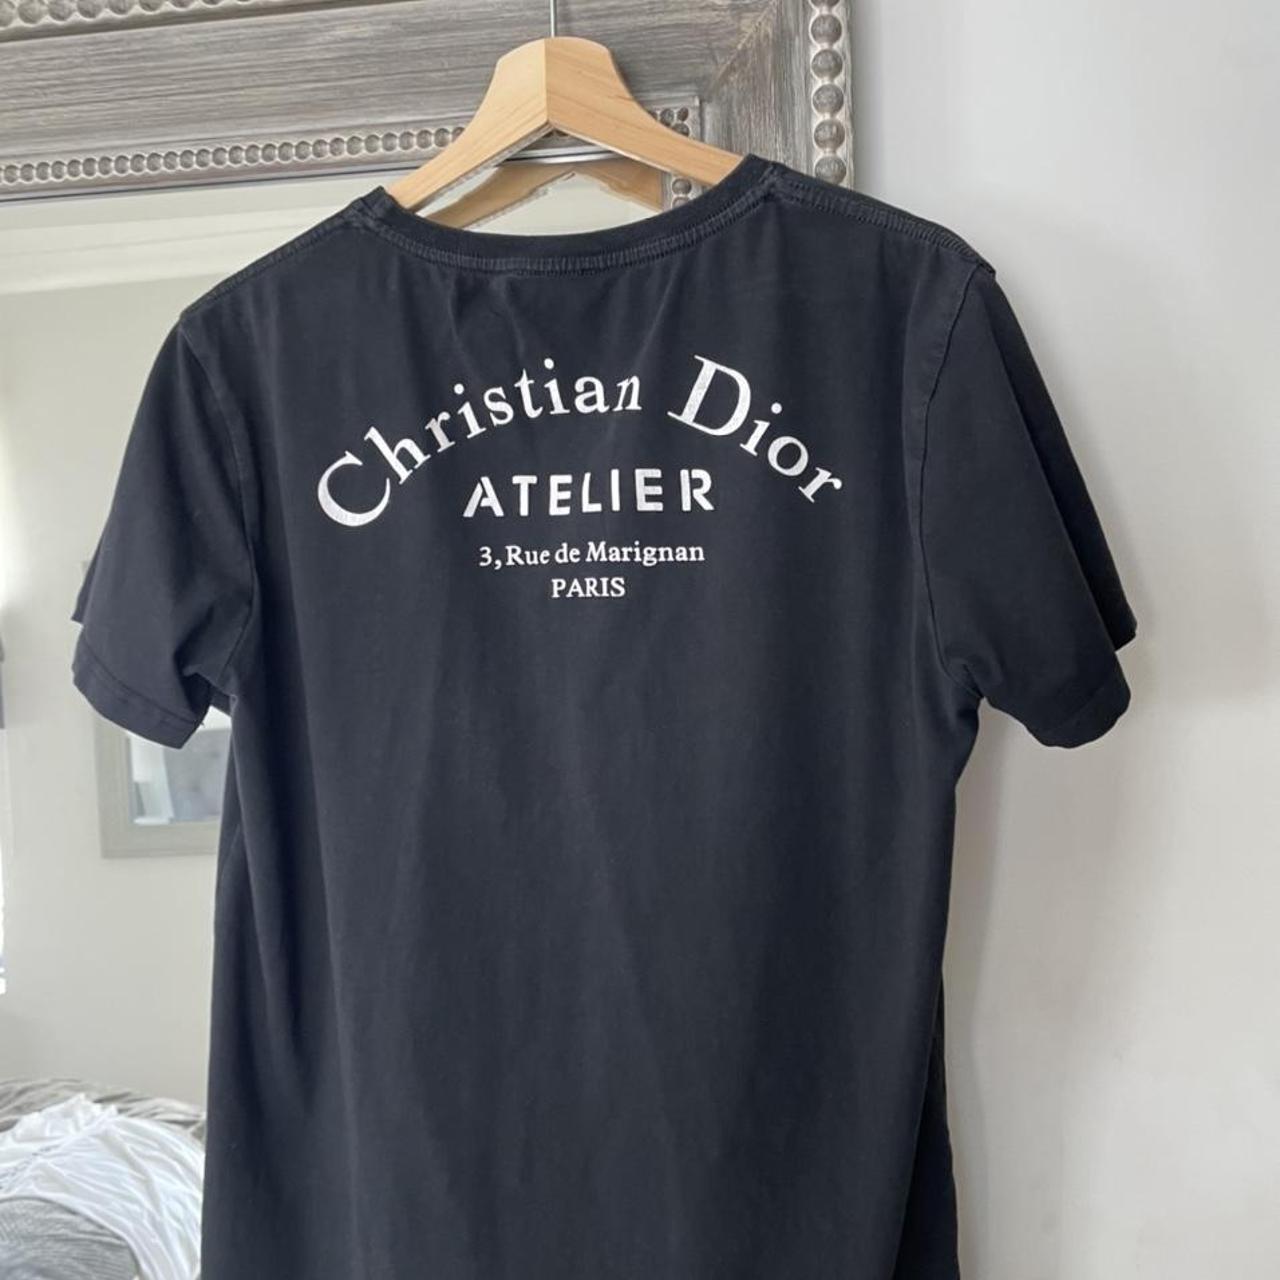 Christian Dior T-shirt. - Depop